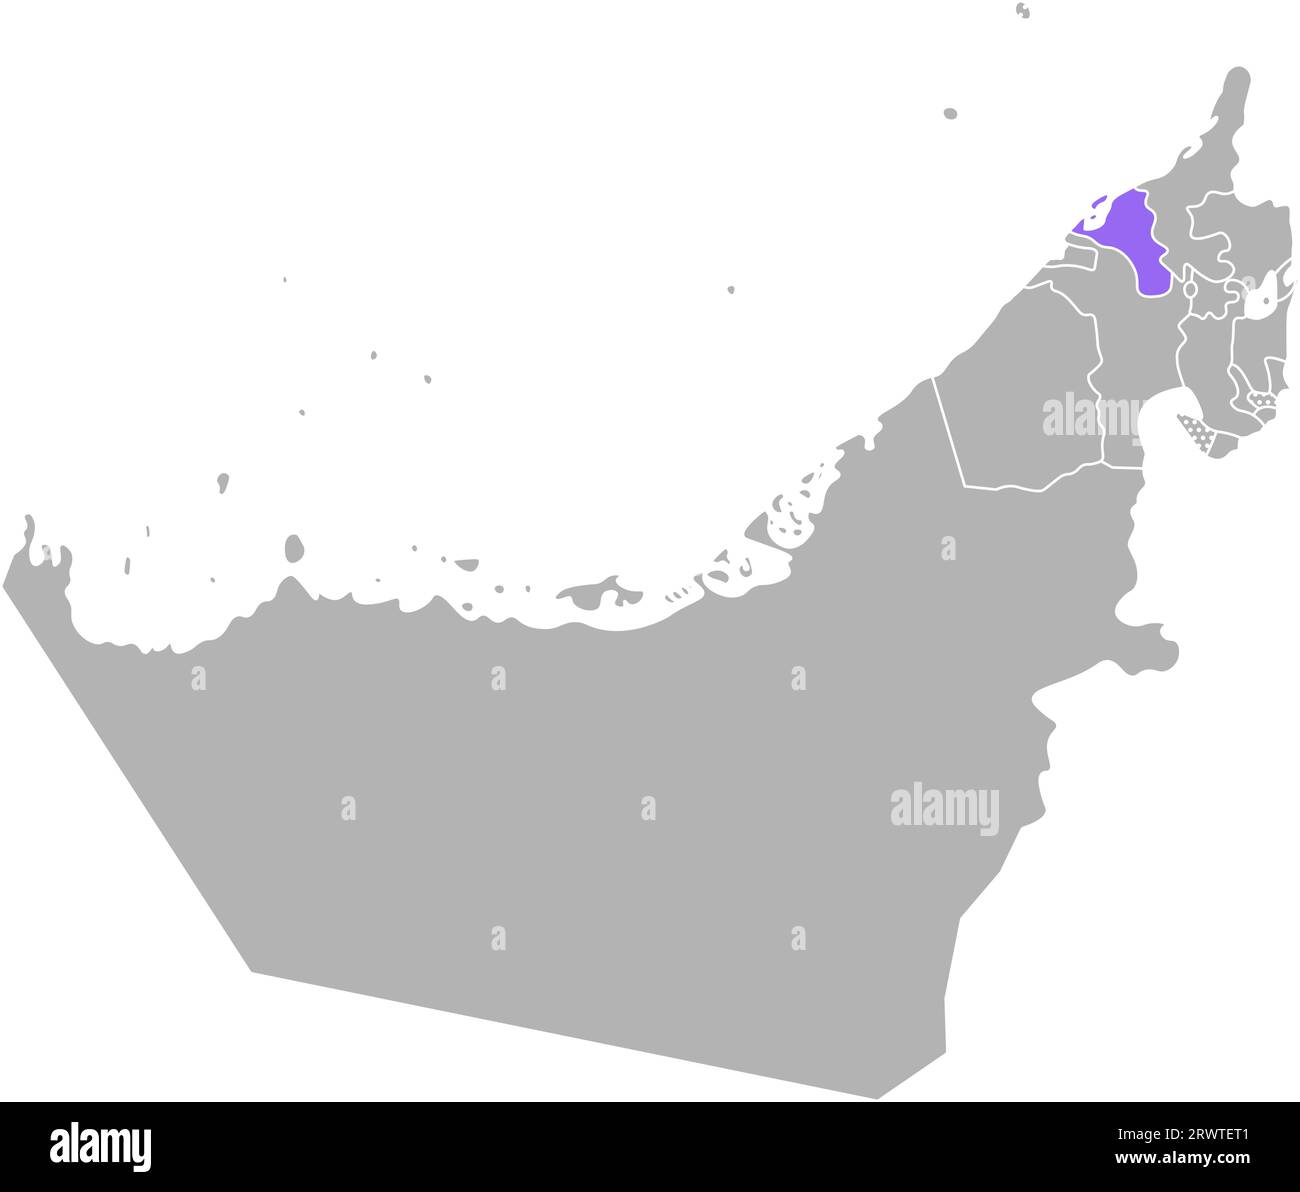 Vektor isolierte vereinfachte bunte Illustration mit grauer Silhouette der Vereinigten Arabischen Emirate (VAE), violetter Kontur der Umm Al Quwain Region und weiß Stock Vektor